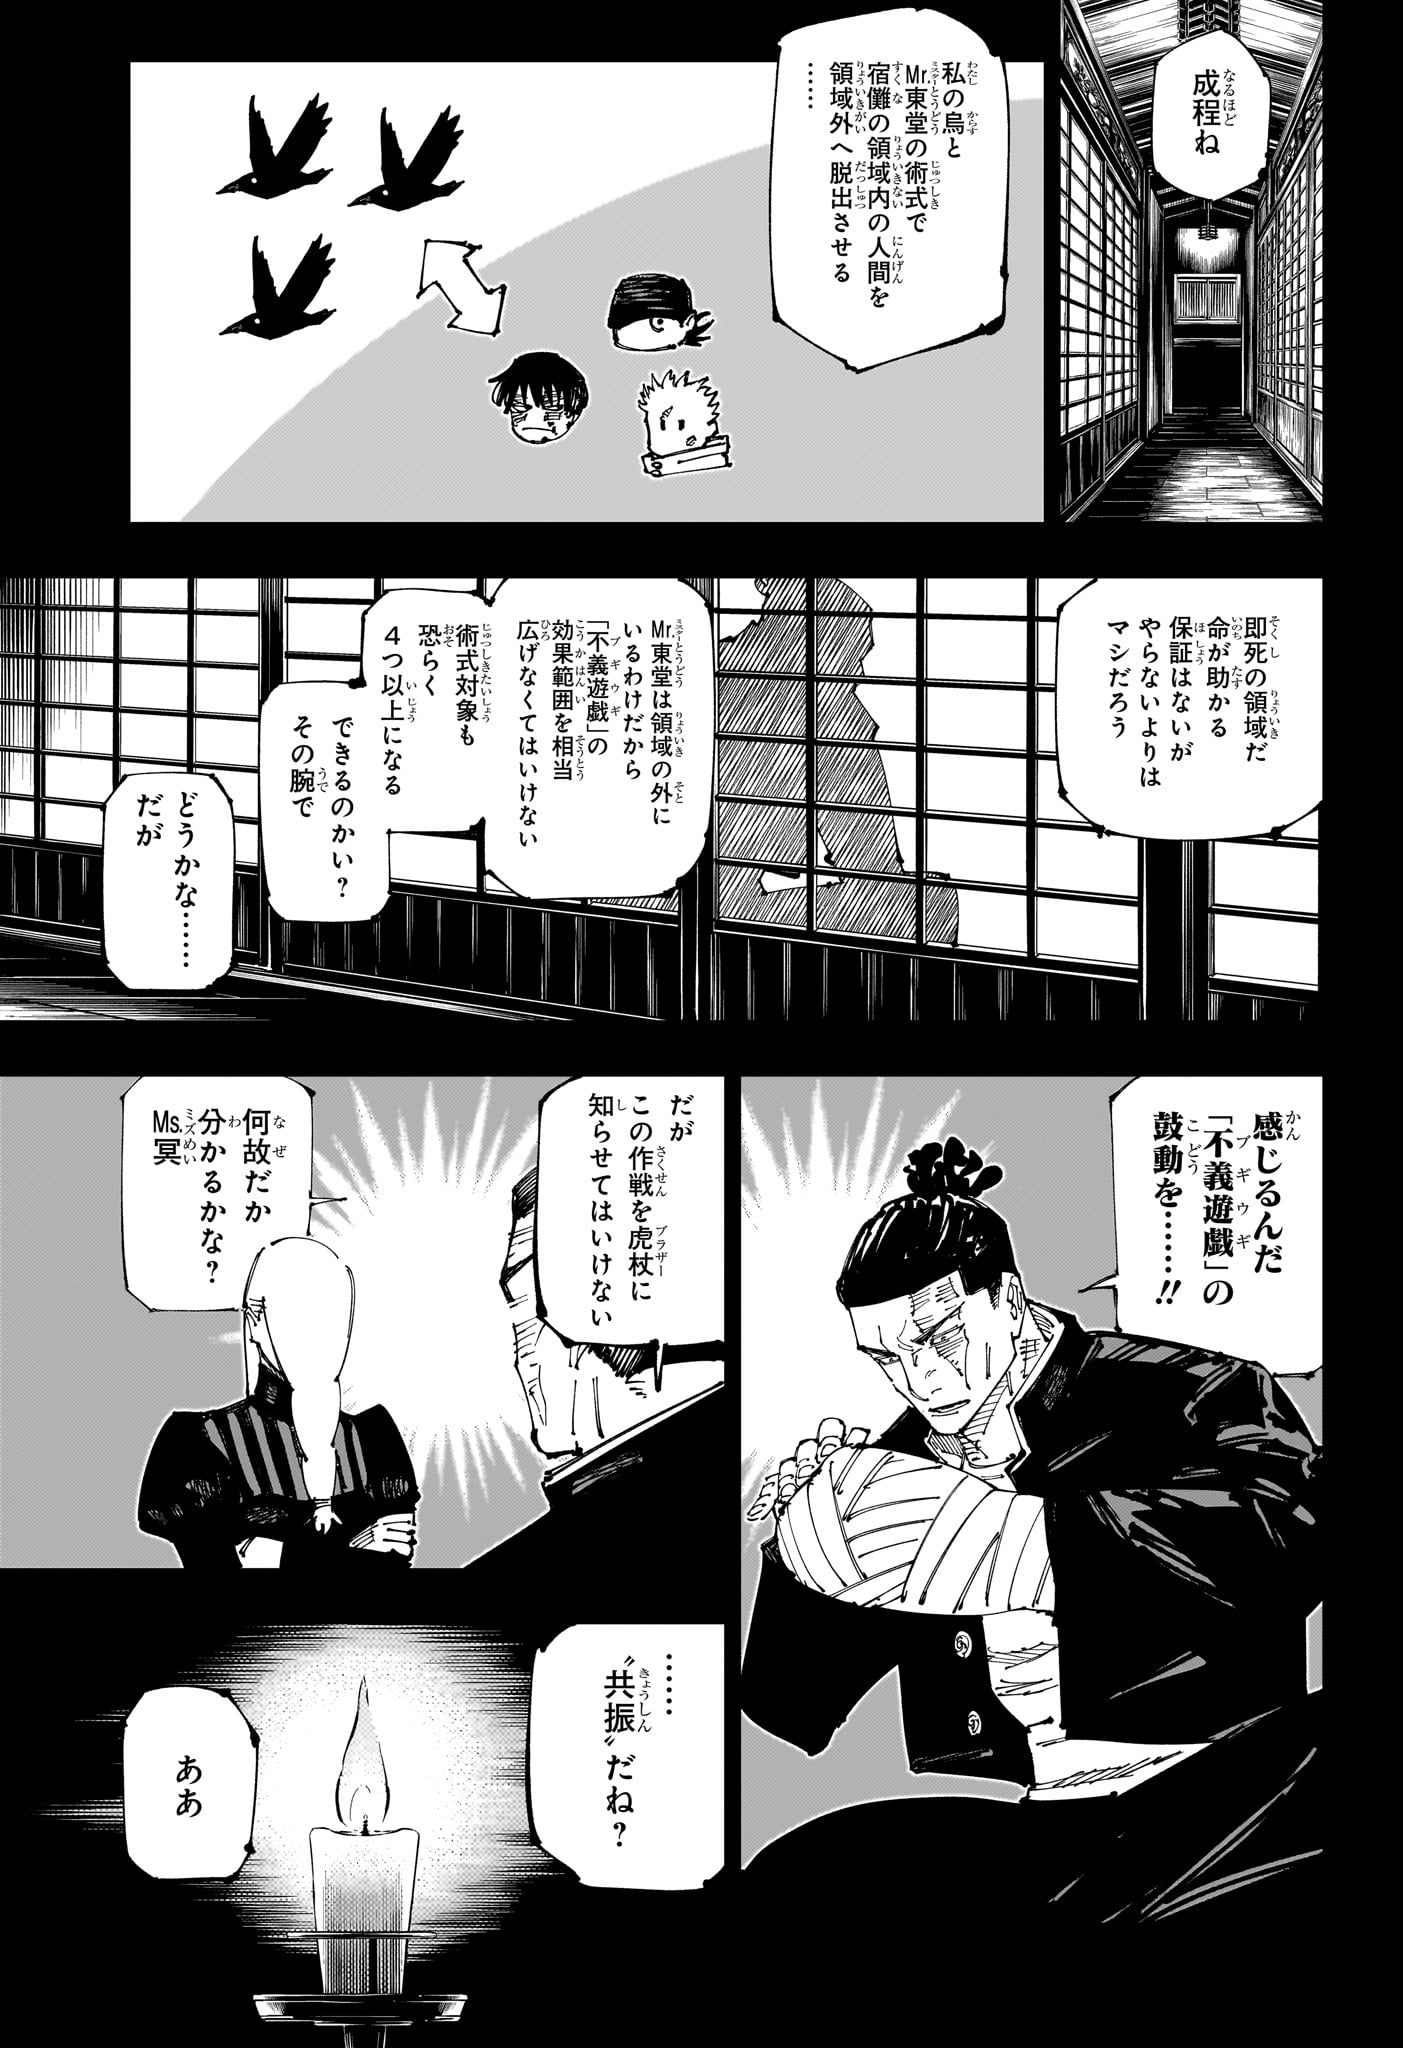 Jujutsu Kaisen - Chapter 259 - Page 15